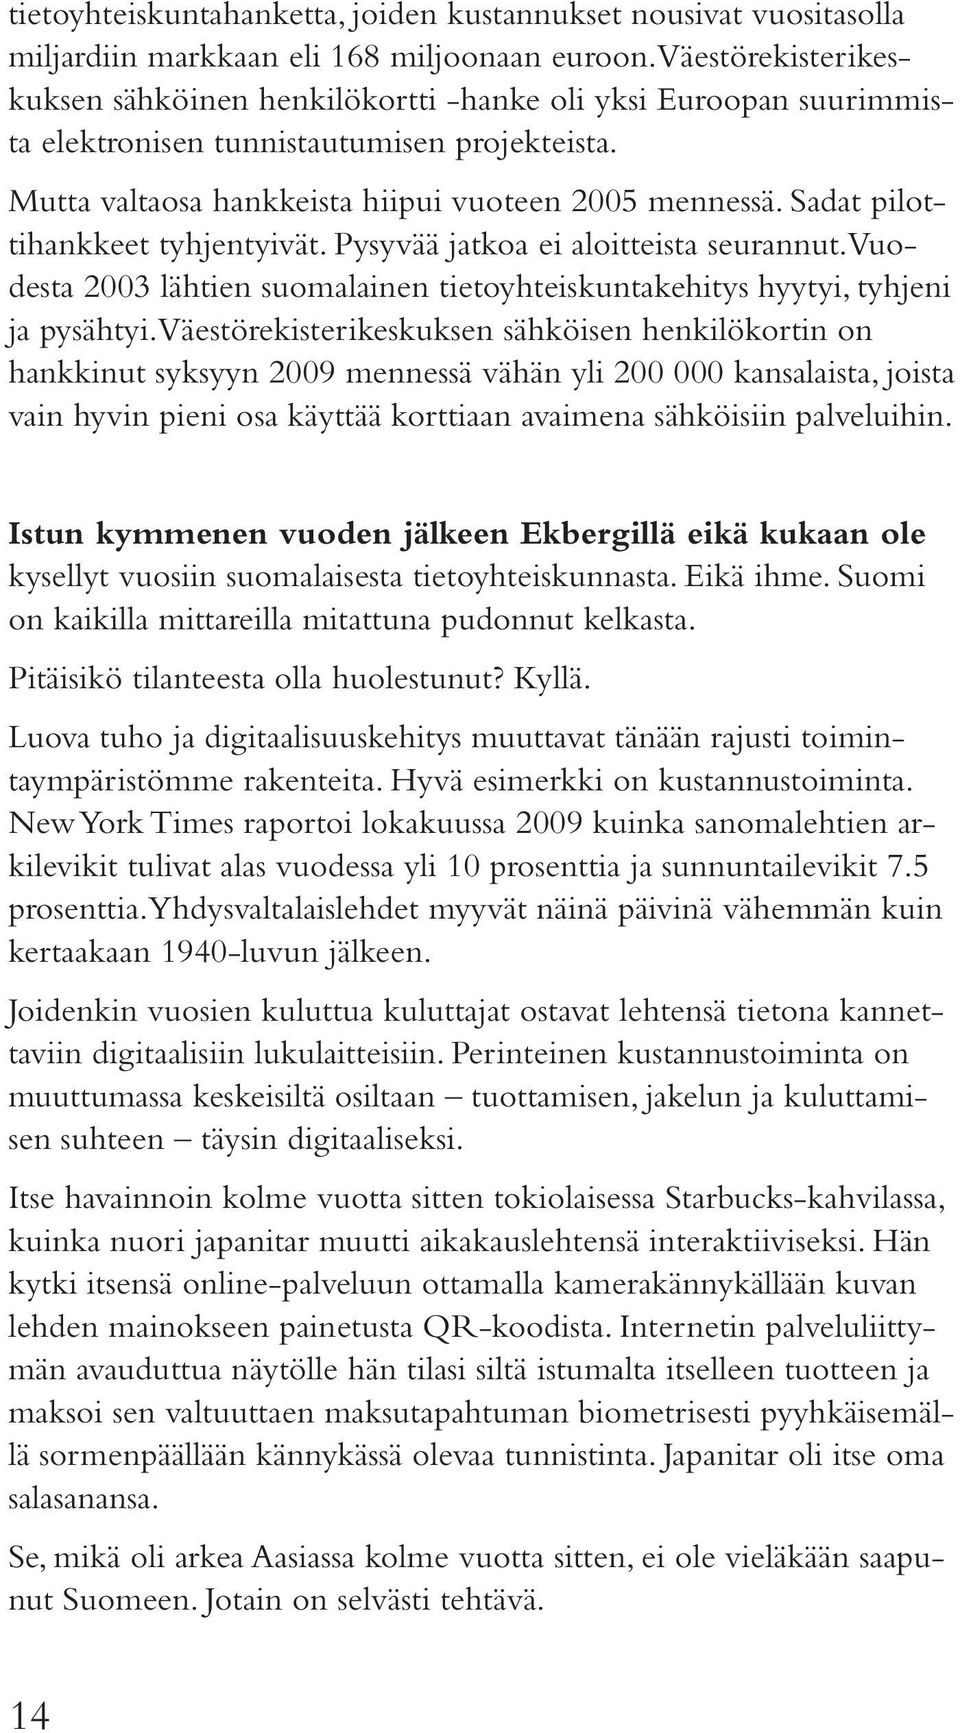 Sadat pilottihankkeet tyhjentyivät. Pysyvää jatkoa ei aloitteista seurannut. Vuodesta 2003 lähtien suomalainen tietoyhteiskuntakehitys hyytyi, tyhjeni ja pysähtyi.